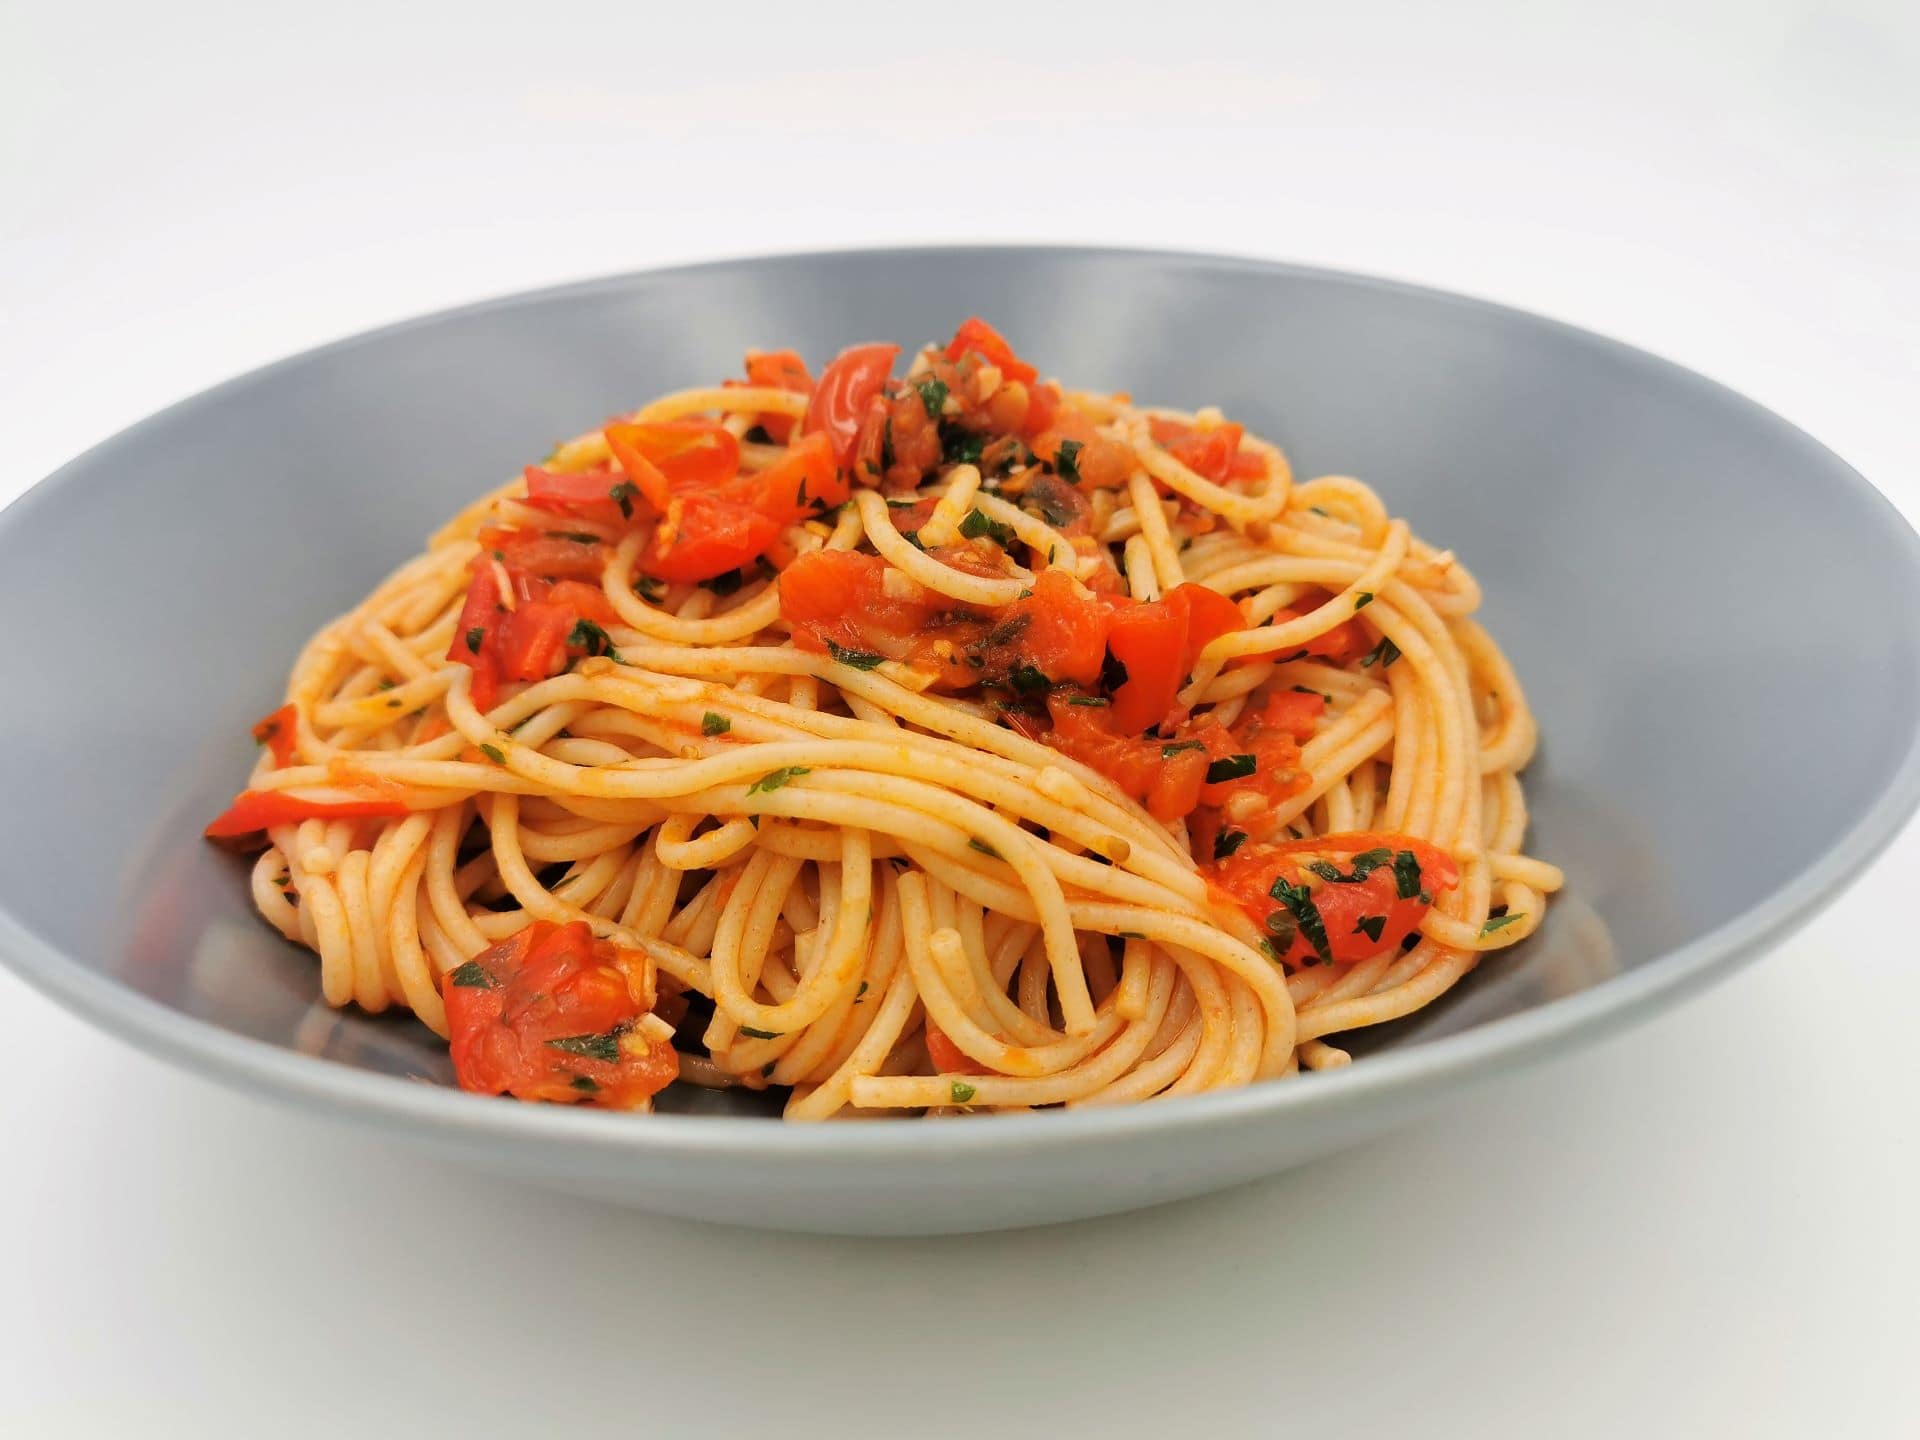 Spaghetti mit geschmorten Tomaten, Chili und Knoblauch angerichtet in einem blauen Teller.